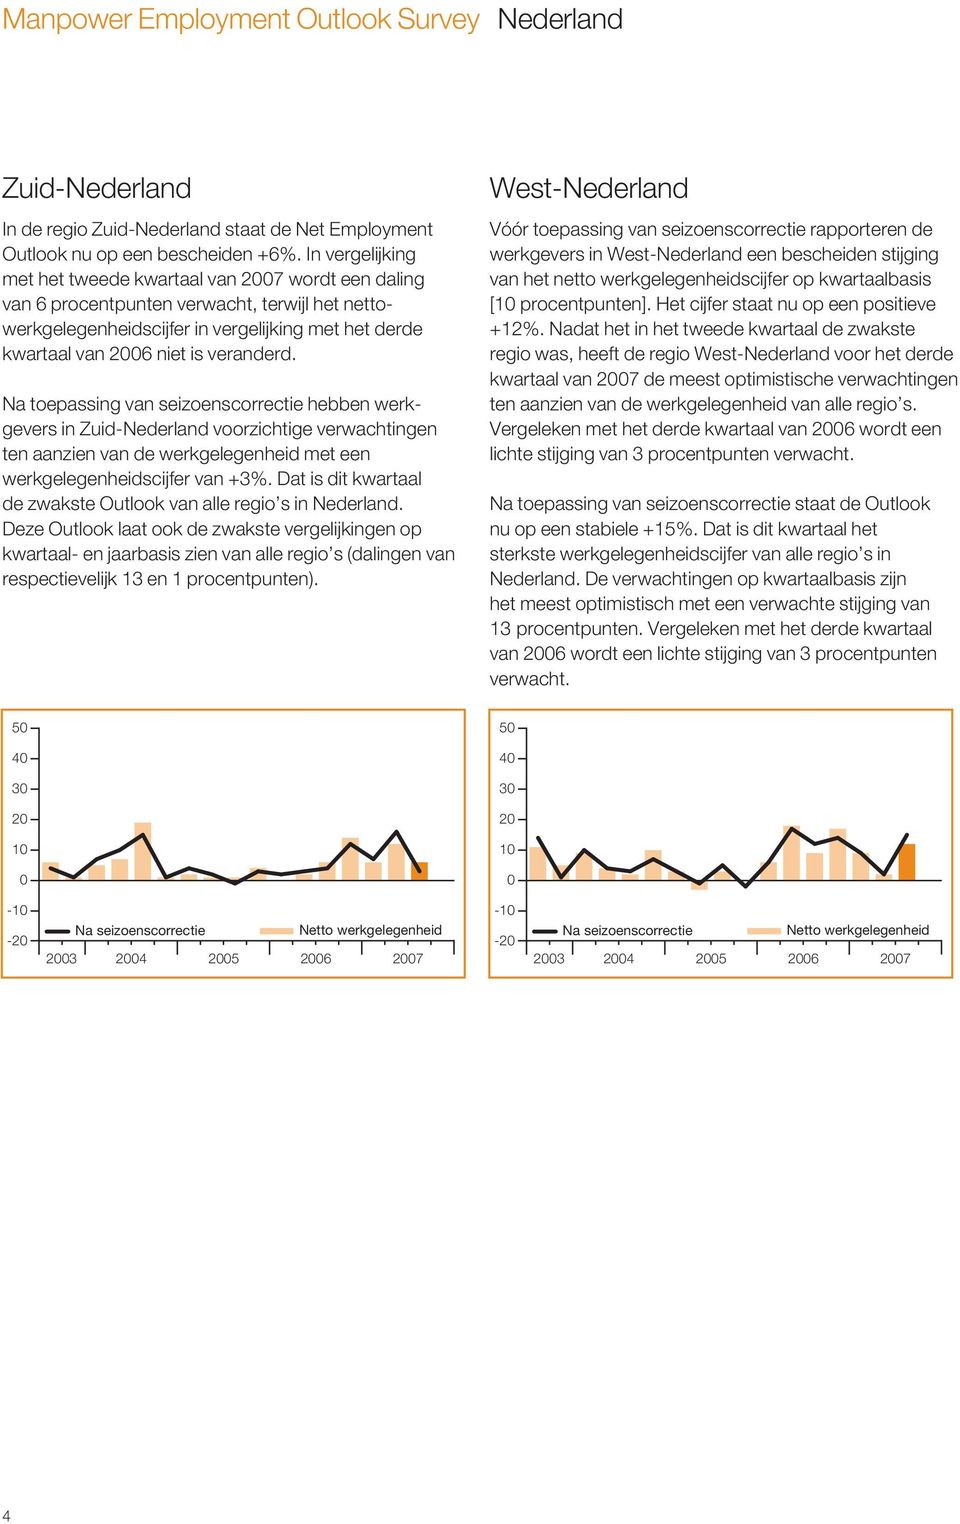 Na toepassing van seizoenscorrectie hebben werkgevers in Zuid-Nederland voorzichtige verwachtingen ten aanzien van de werkgelegenheid met een werkgelegenheidscijfer van +3%.